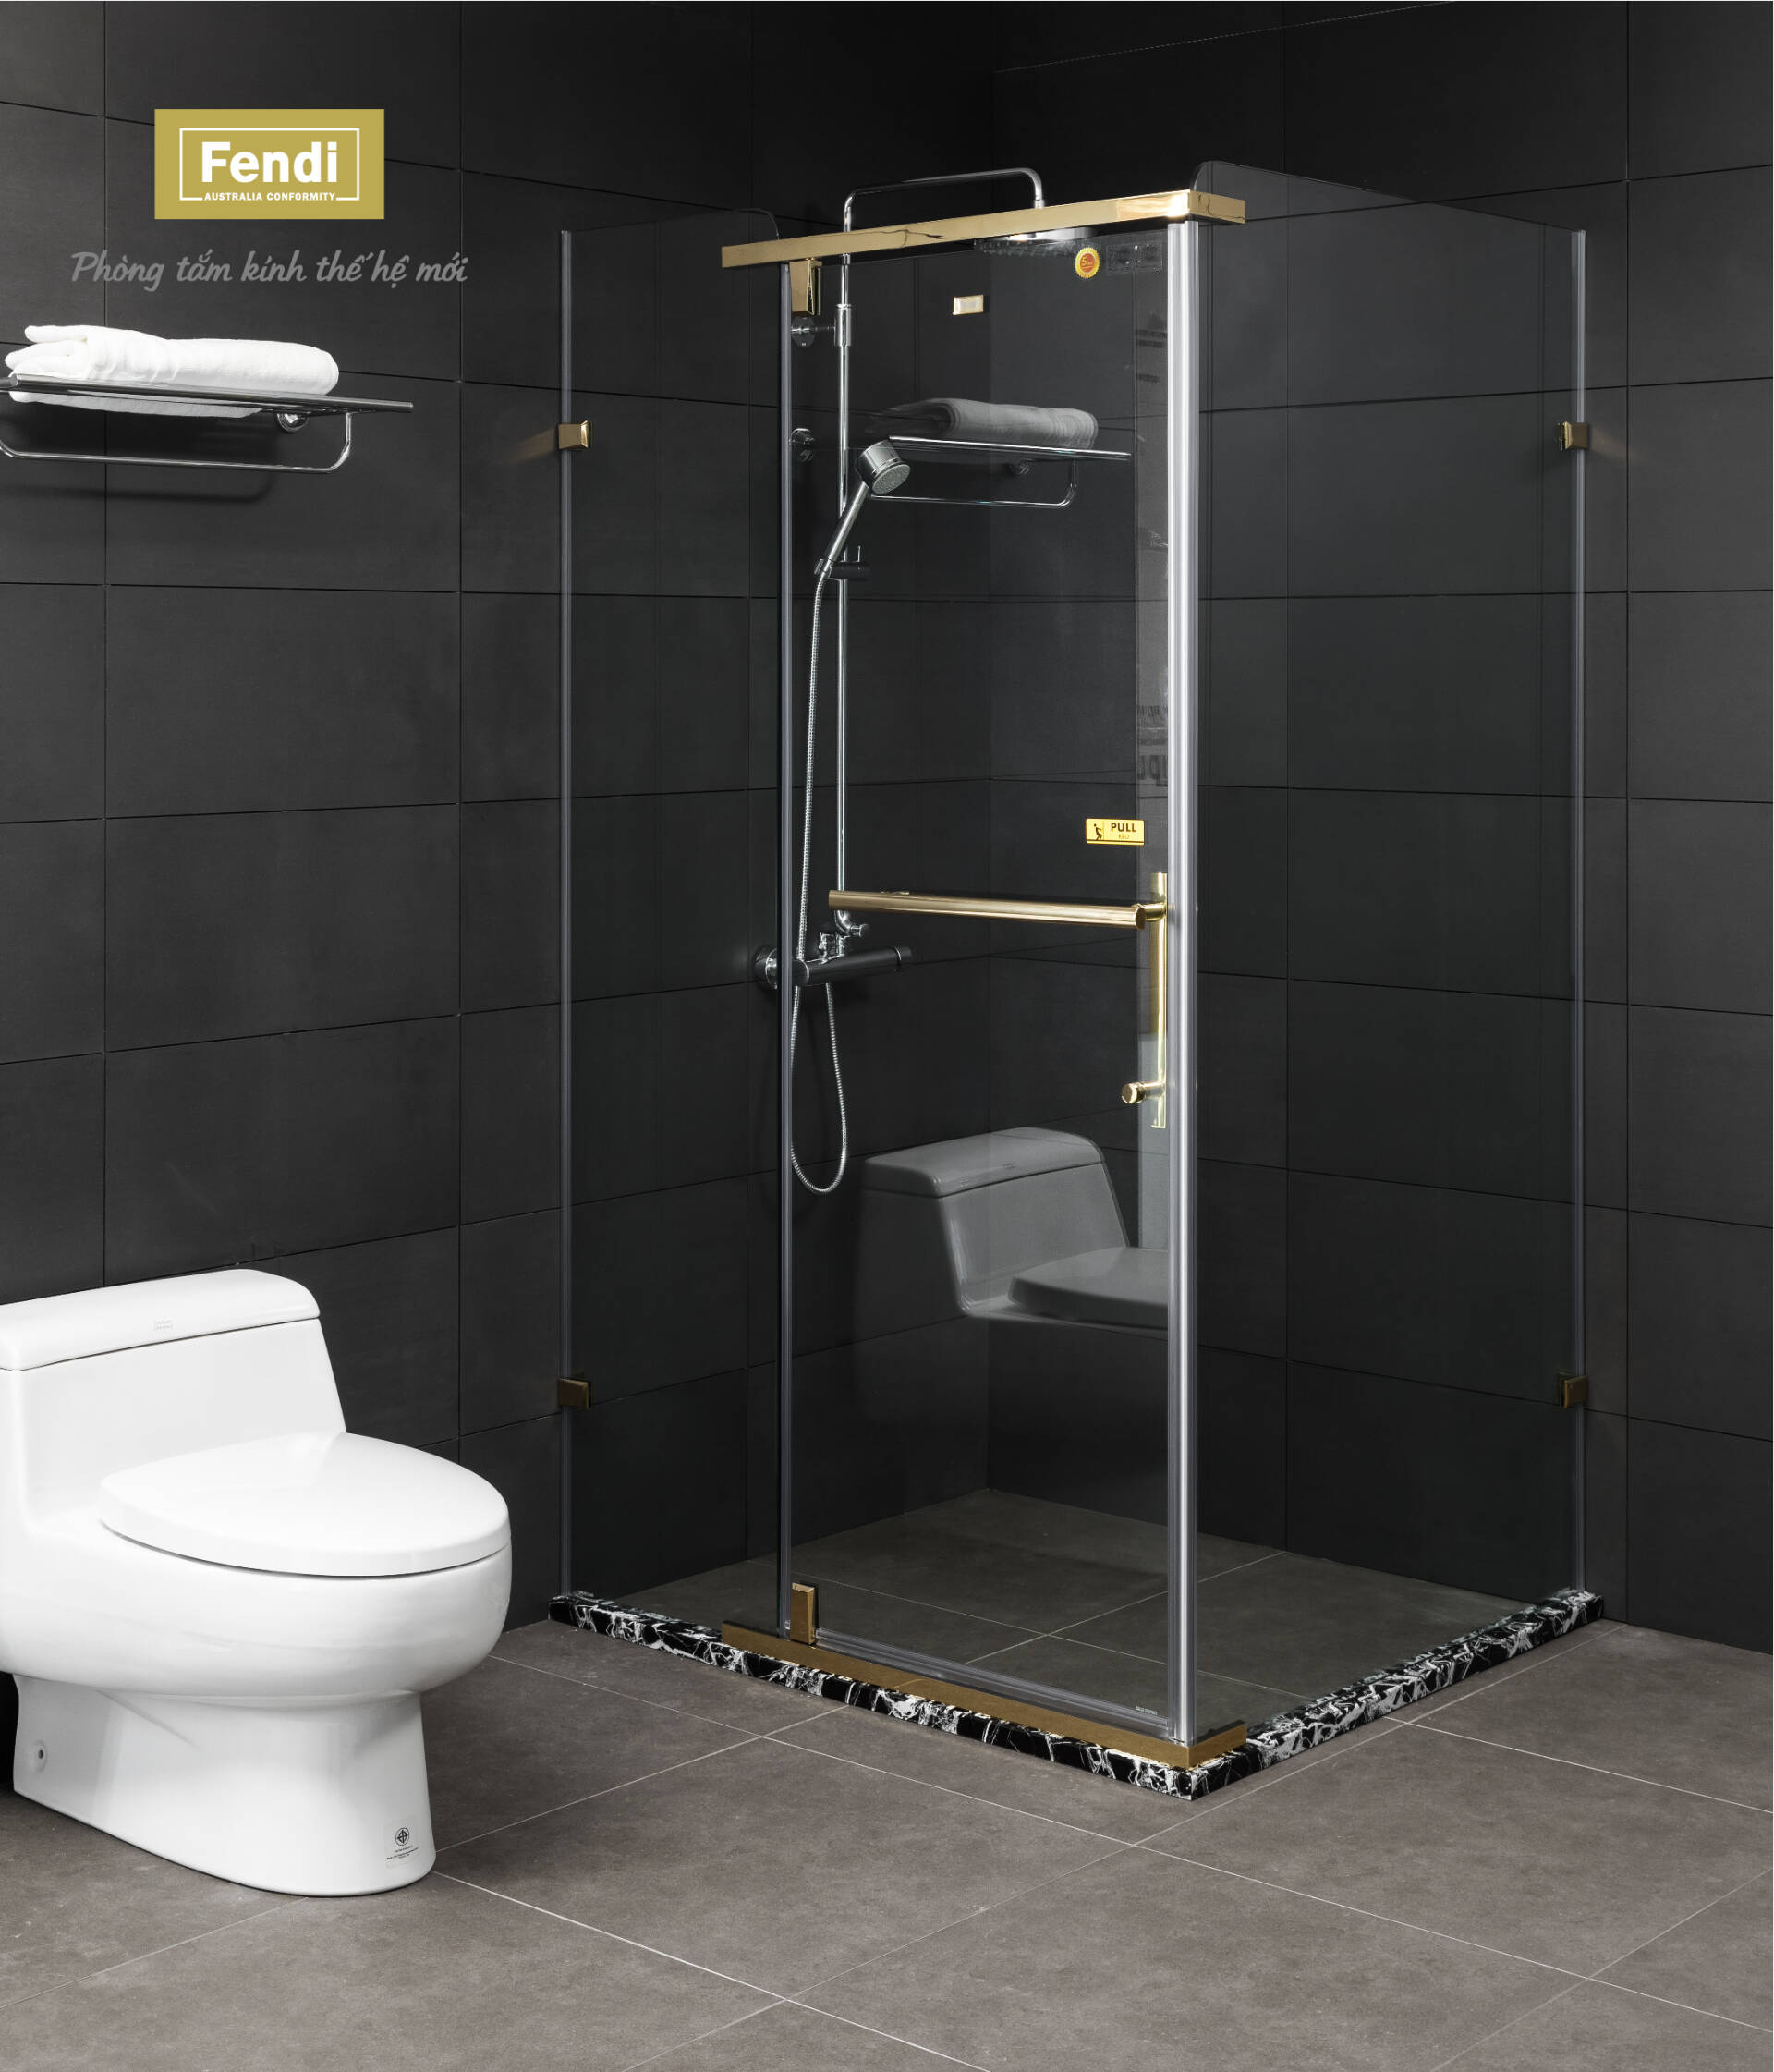 Phòng tắm kính là giải pháp giúp xử lý không gian phòng tắm hiệu quả và thông minh